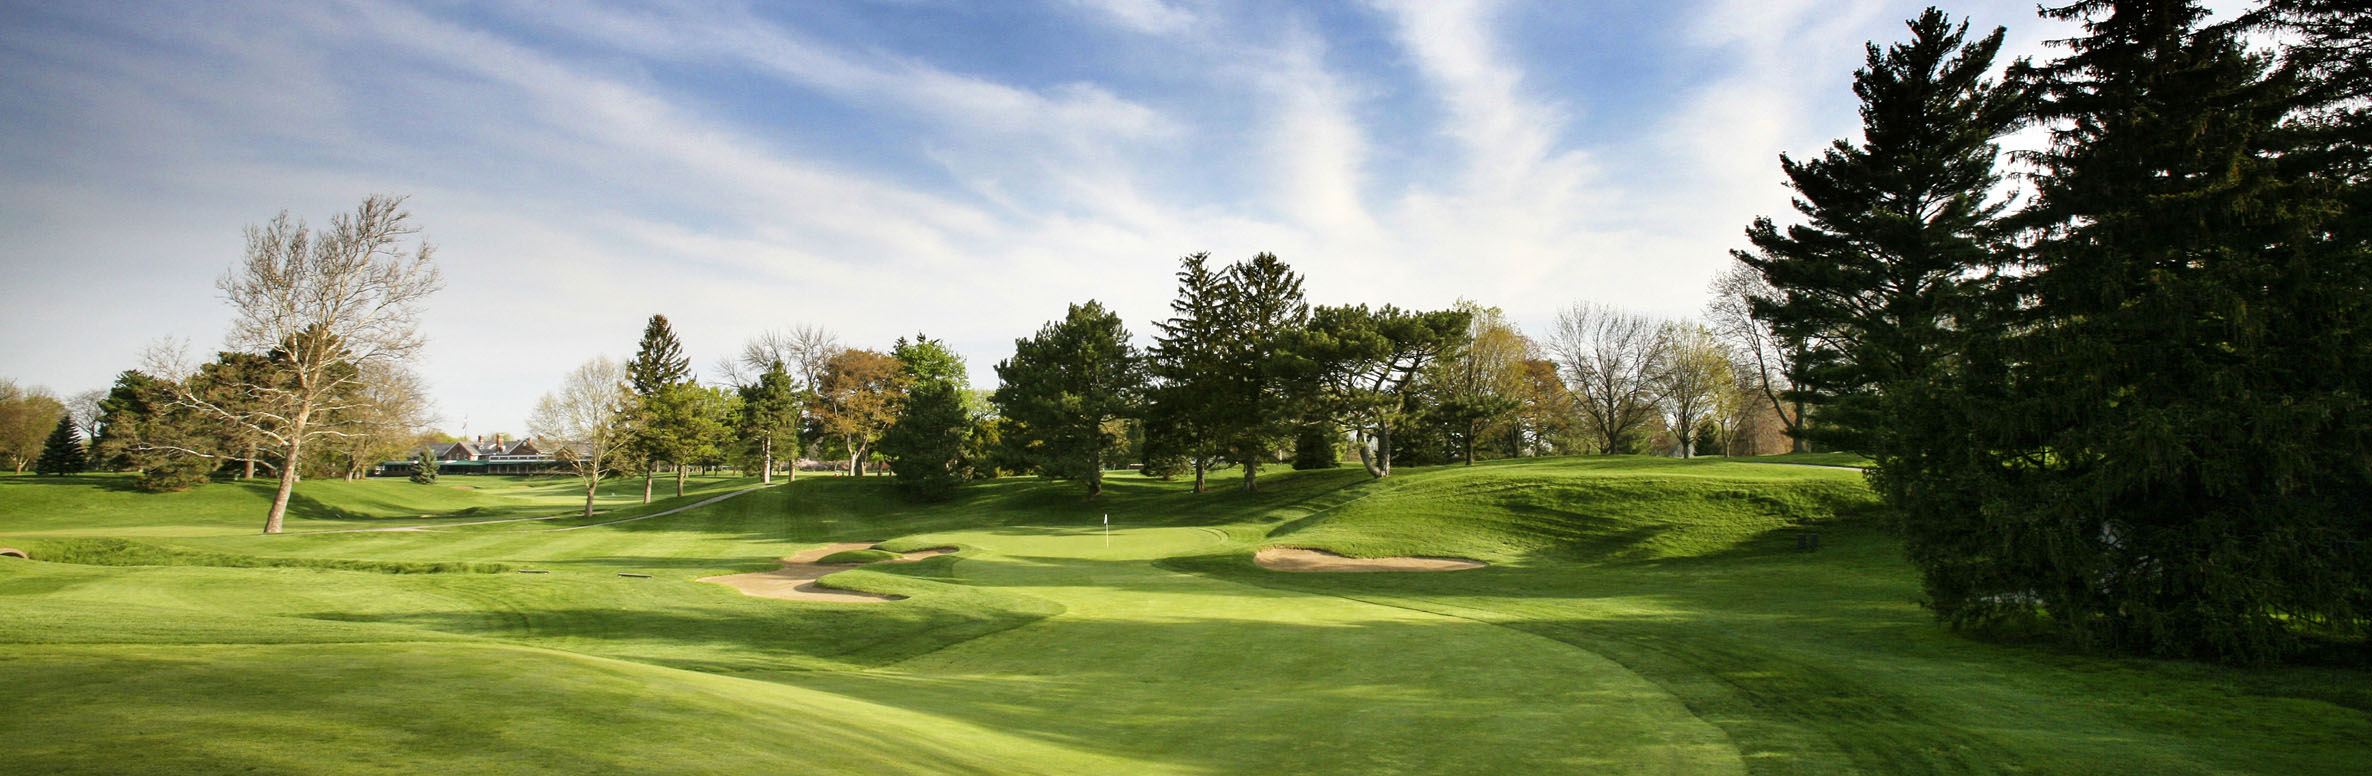 Golf Course Image - Inverness Club No. 17